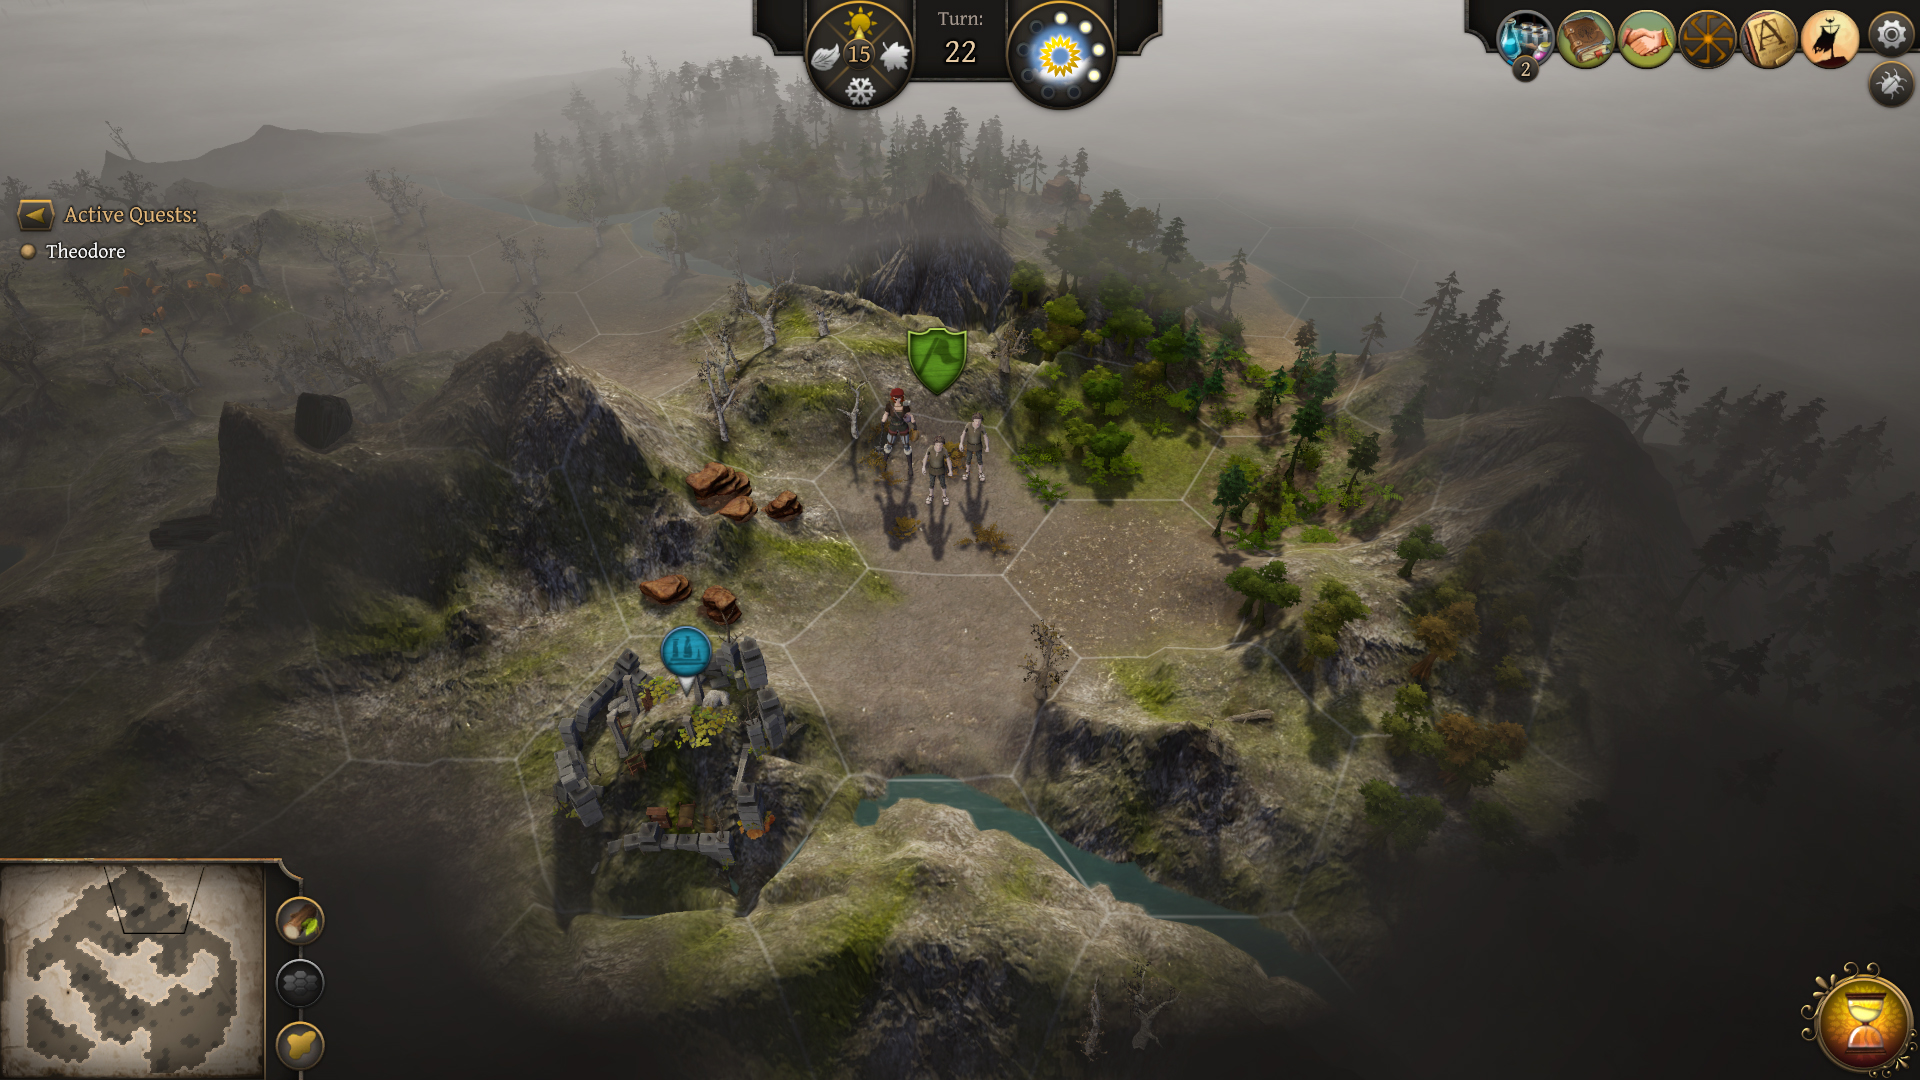 Arctic Quest (Utomik, gameplay) 